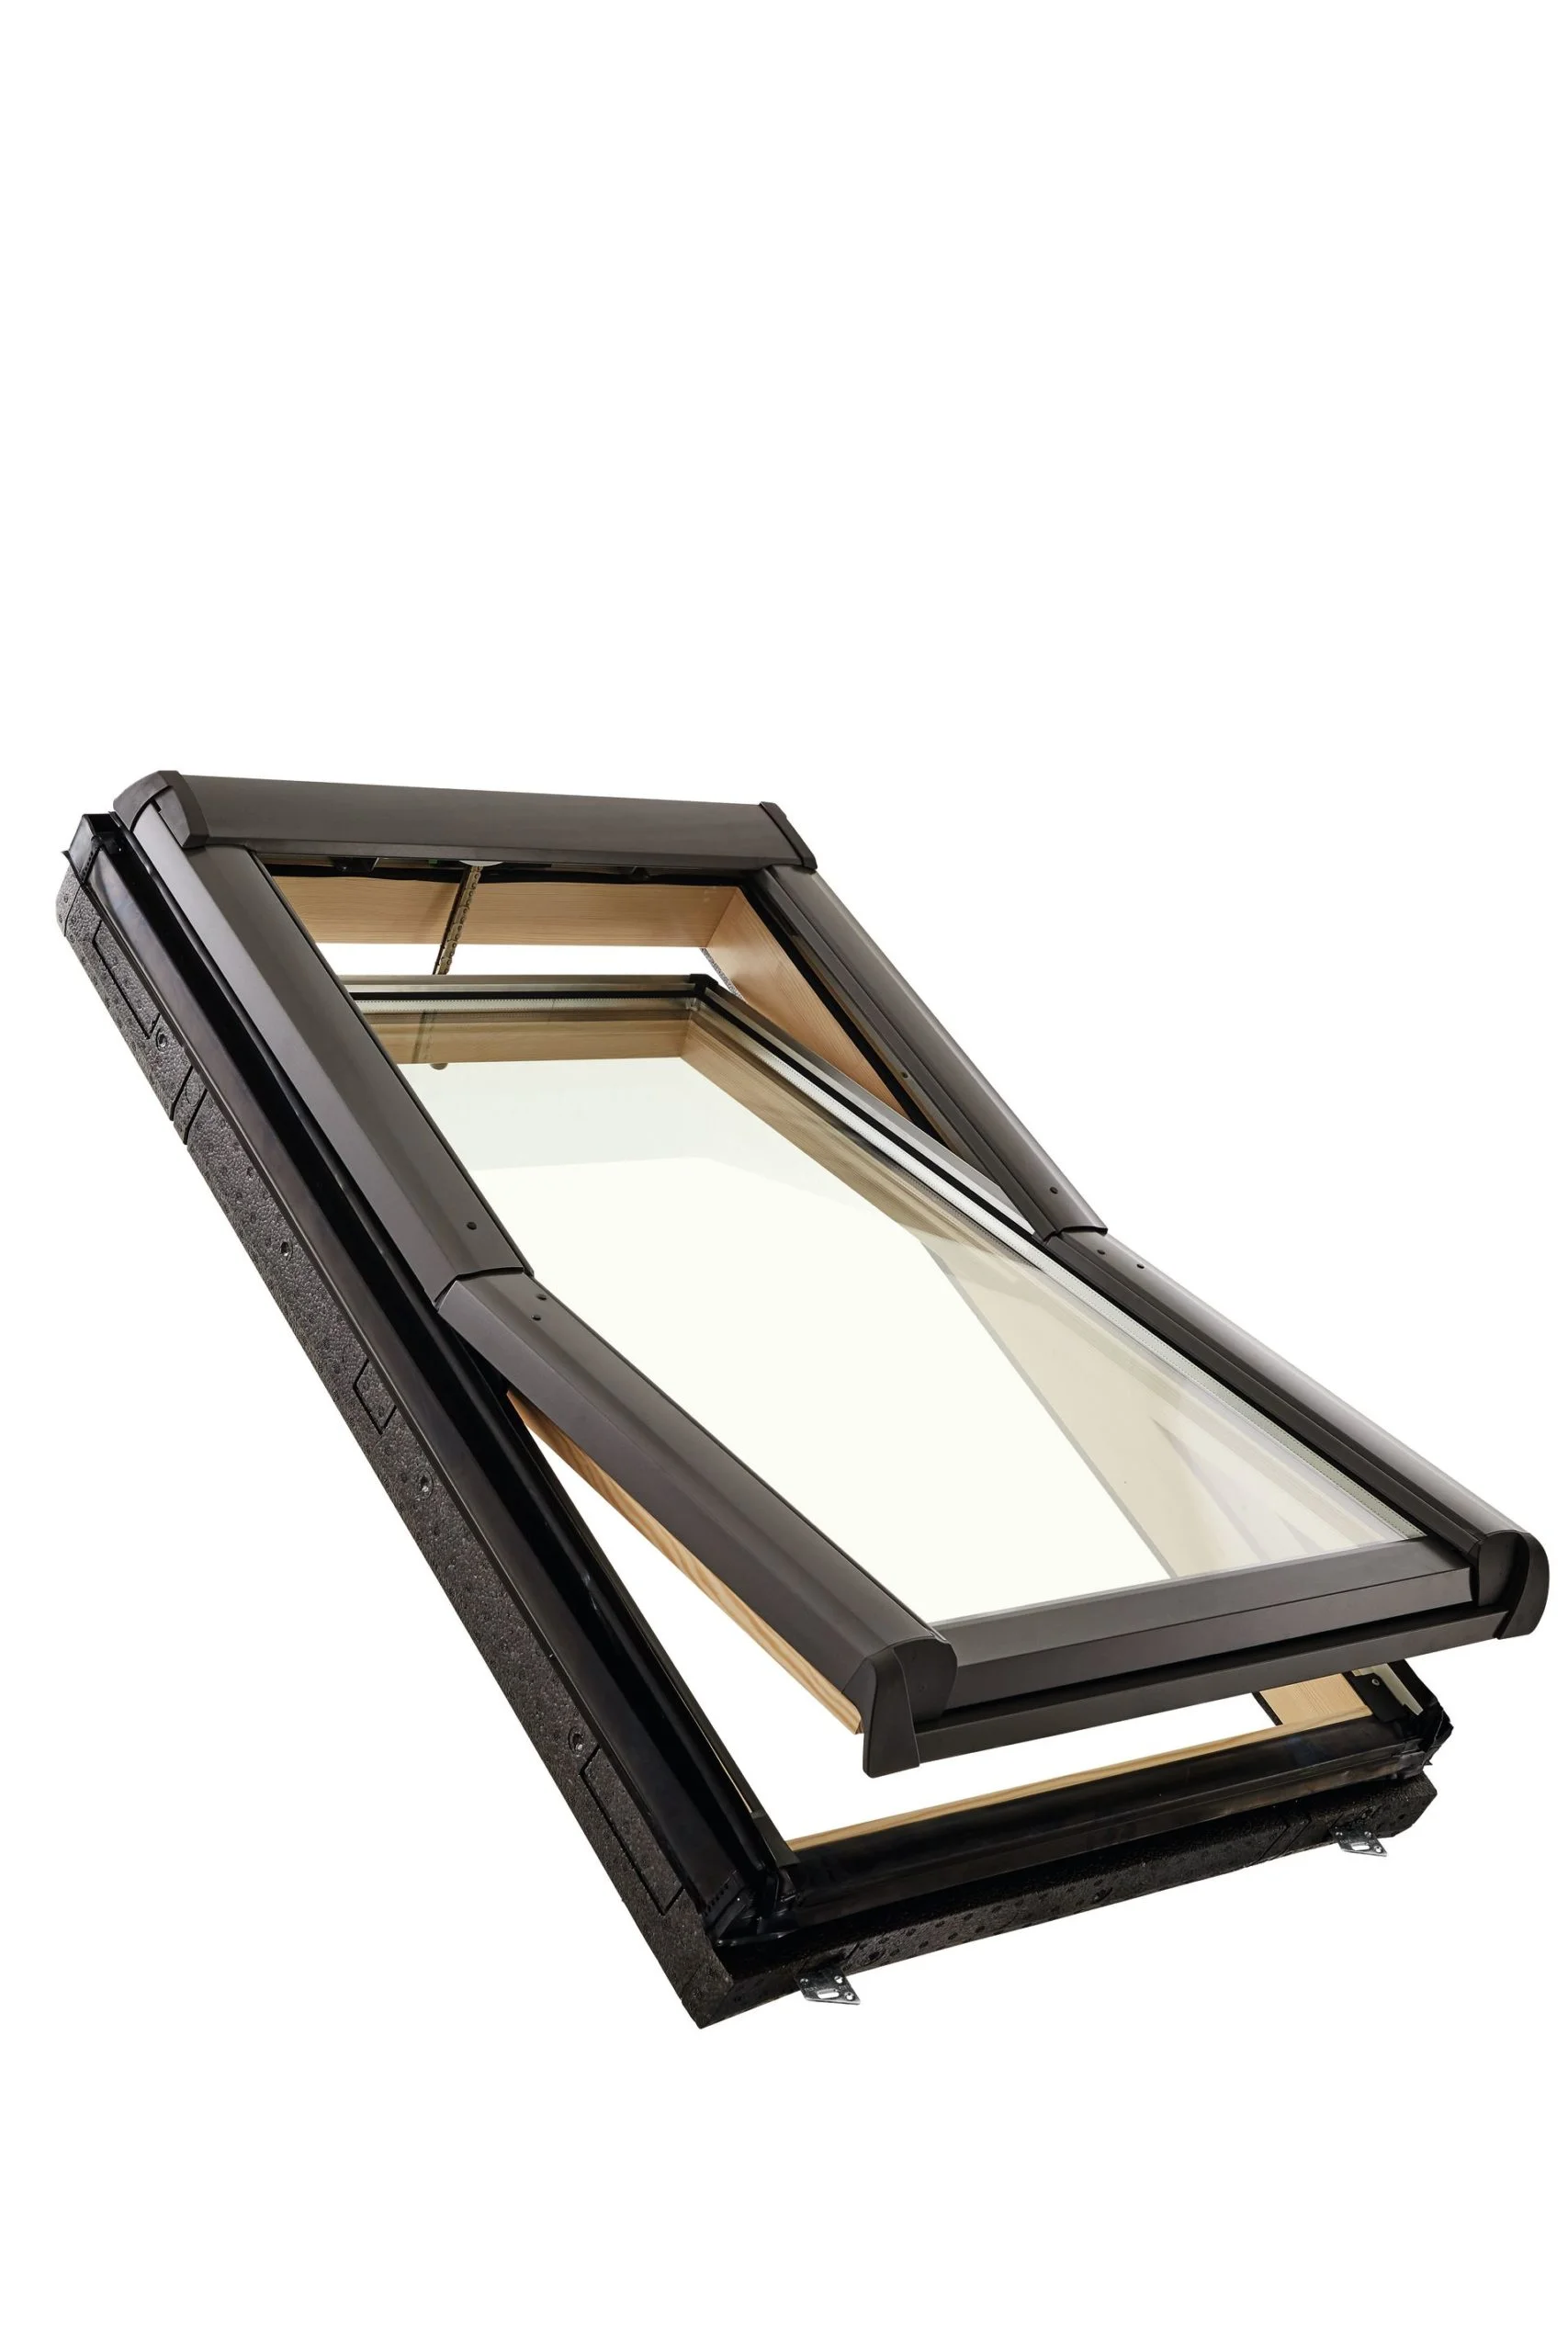 Roto kyvné okno elektrické (EF) Designo R4 drevené trojsklo Standard 74/98 cm